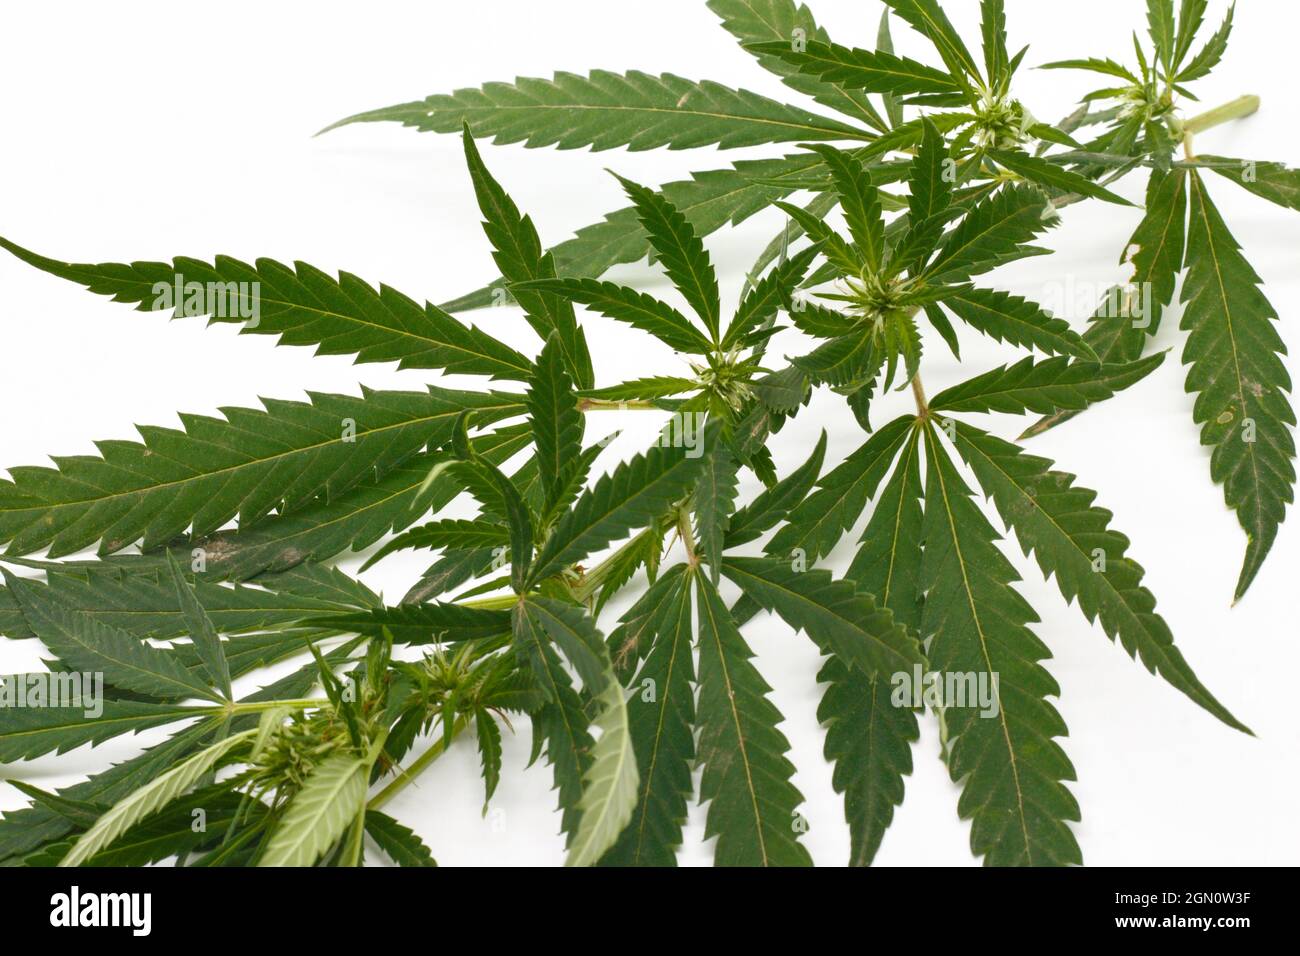 immagine di foglie di marijuana su sfondo bianco concetto di medicina alternativa cosmetici e prodotti per la cura della pelle Foto Stock